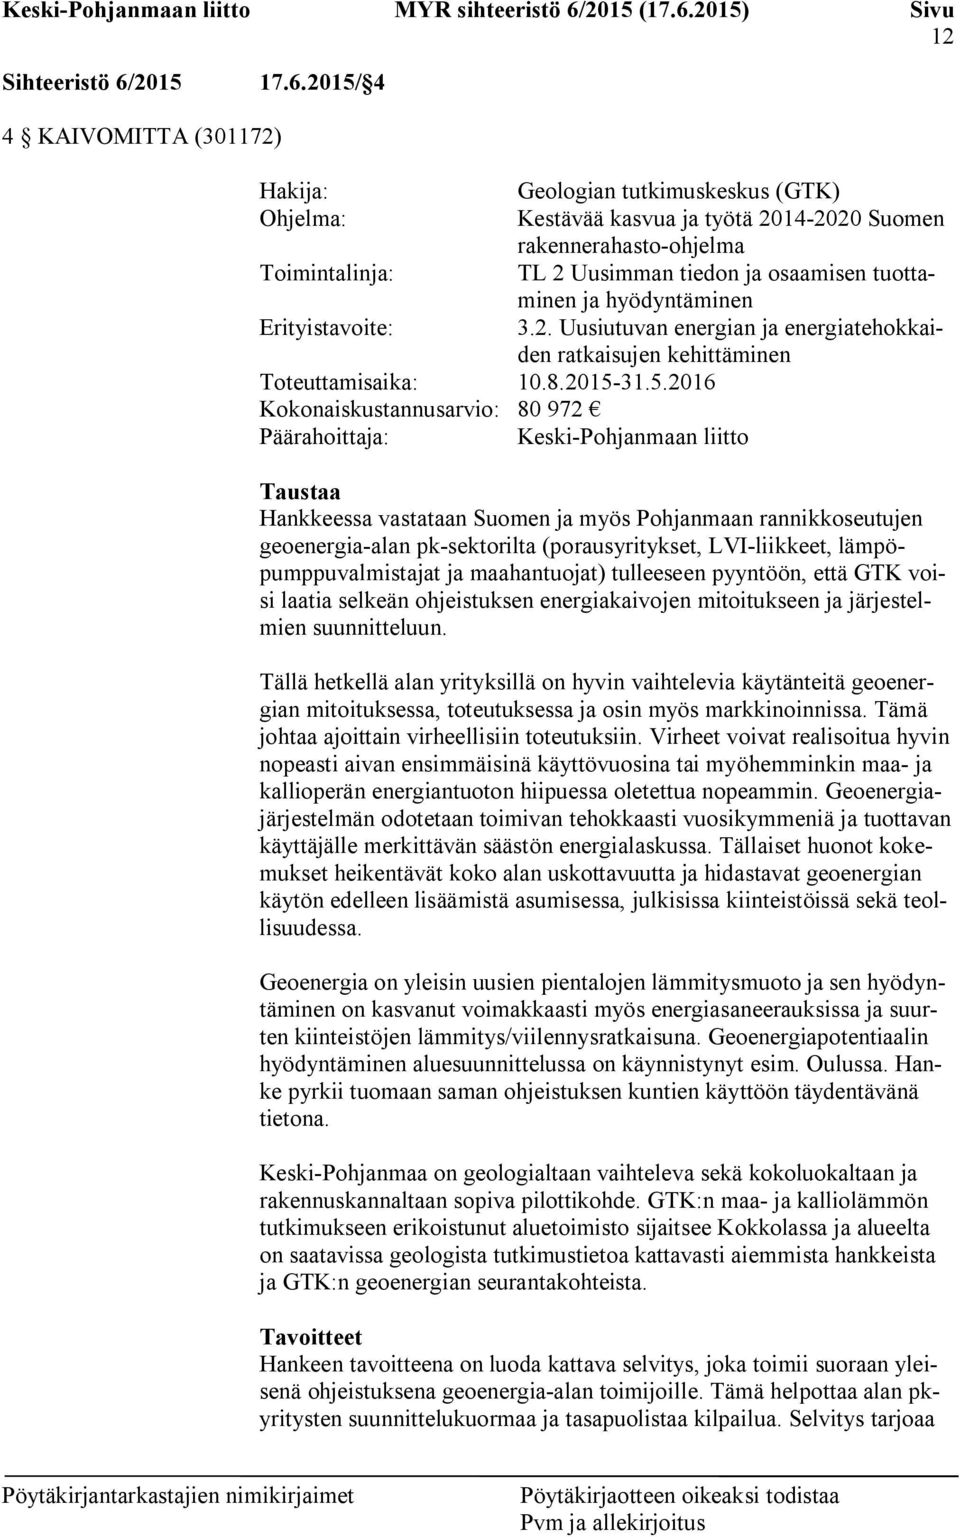 2015/ 4 4 KAIVOMITTA (301172) Hakija: Geologian tutkimuskeskus (GTK) Ohjelma: Kestävää kasvua ja työtä 2014-2020 Suomen rakennerahasto-ohjelma Toimintalinja: TL 2 Uusimman tiedon ja osaamisen